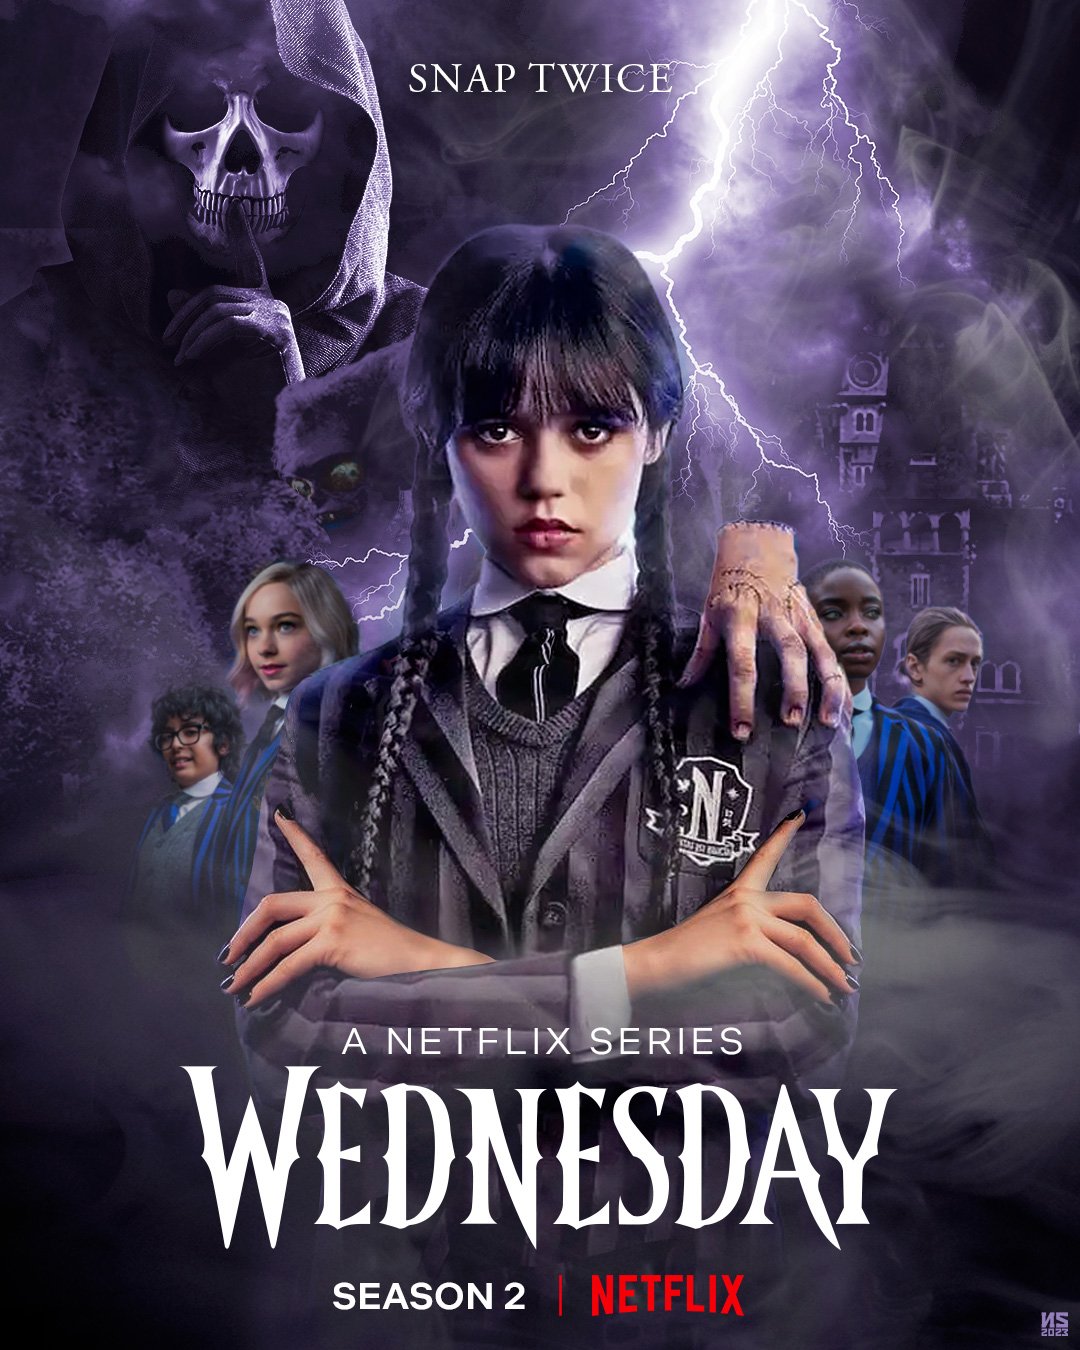 Netflix Updates on X: Wednesday season 2 REPORTEDLY coming soon 😲😲😲   / X